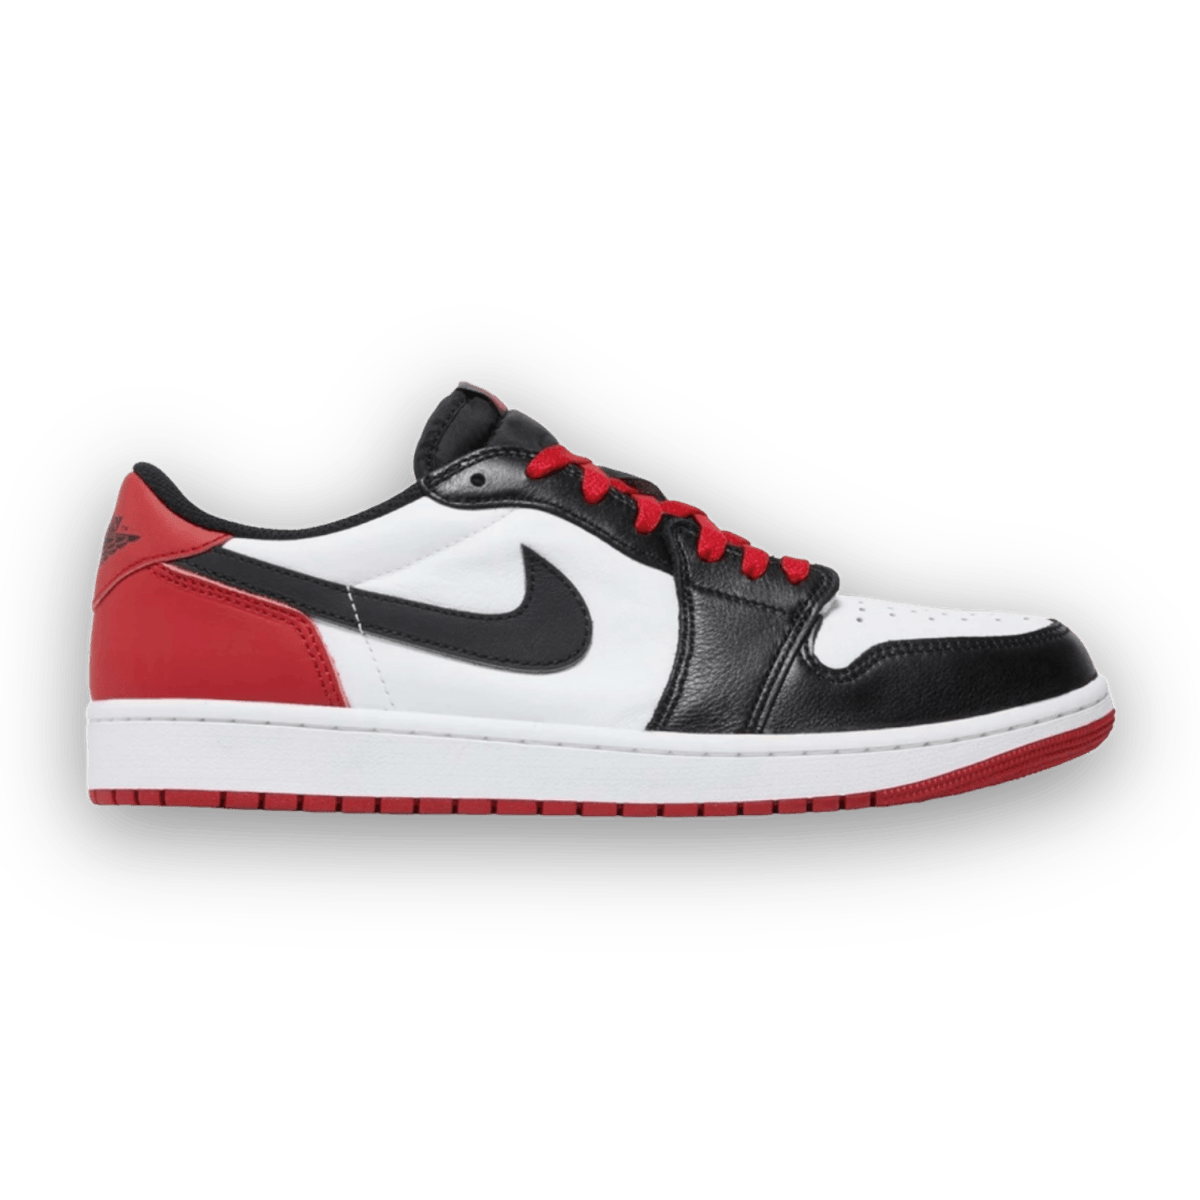 Air Jordan 1 Retro Low OG 'Black Toe' 2023 - Grade School - Low Sneaker - Jawns on Fire Sneakers & Streetwear